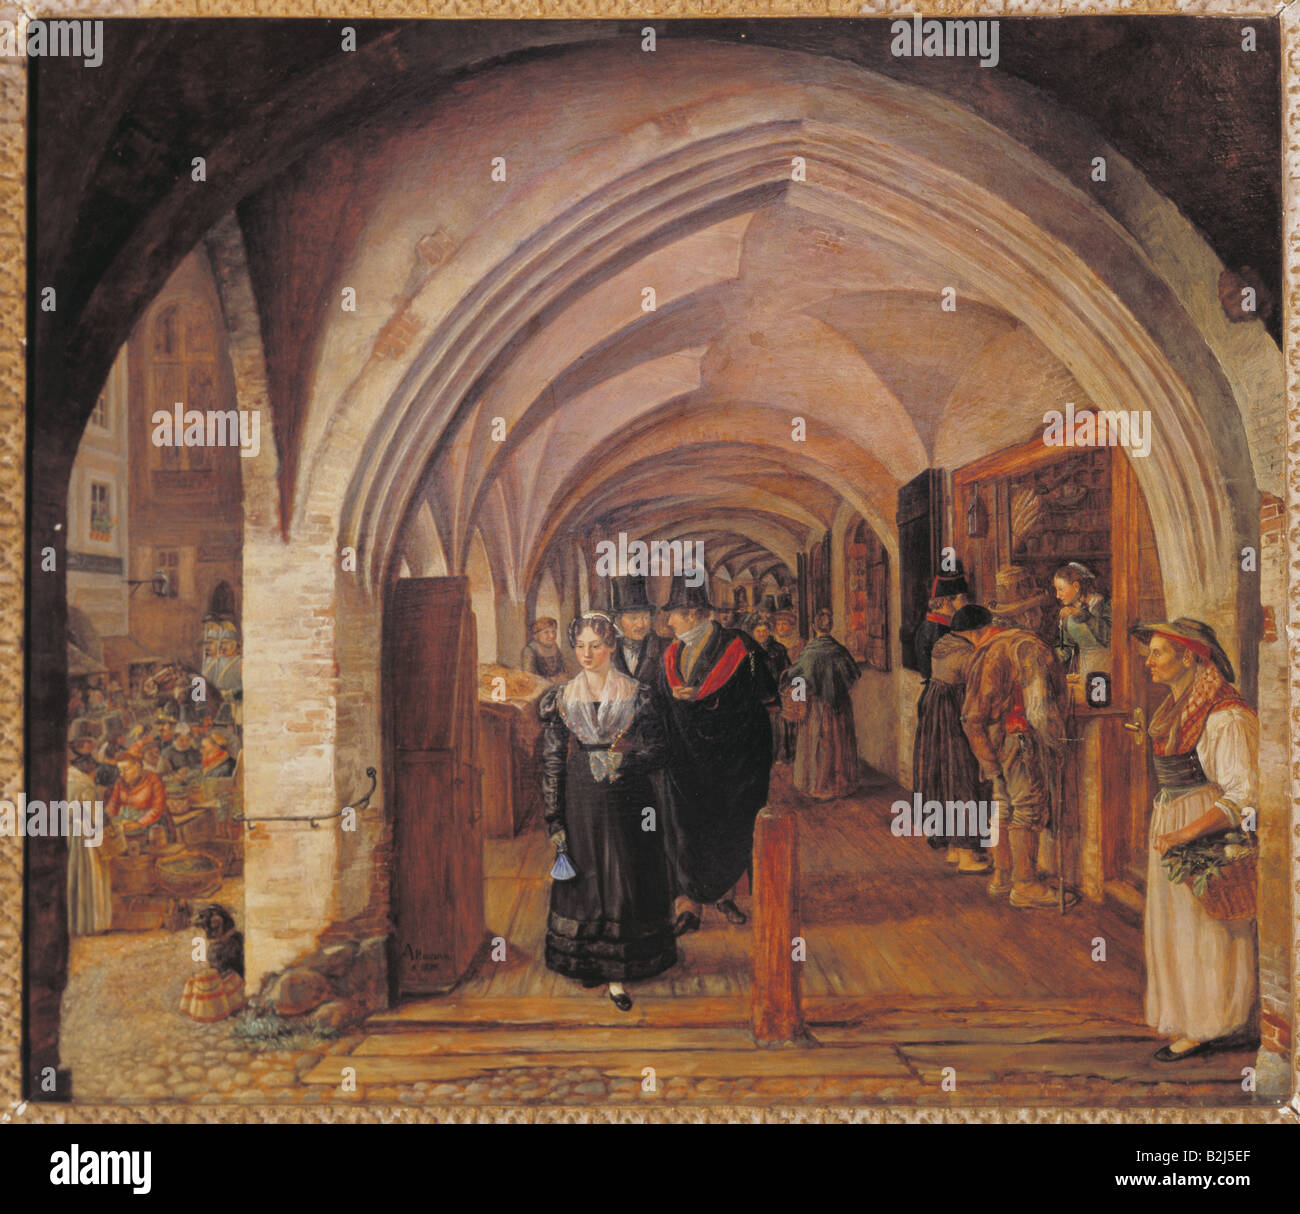 Geografía / viajes, Alemania, Munich, Kaufingerstraße, arcade, pintura, óleo sobre lienzo, alrededor de 1850, Foto de stock